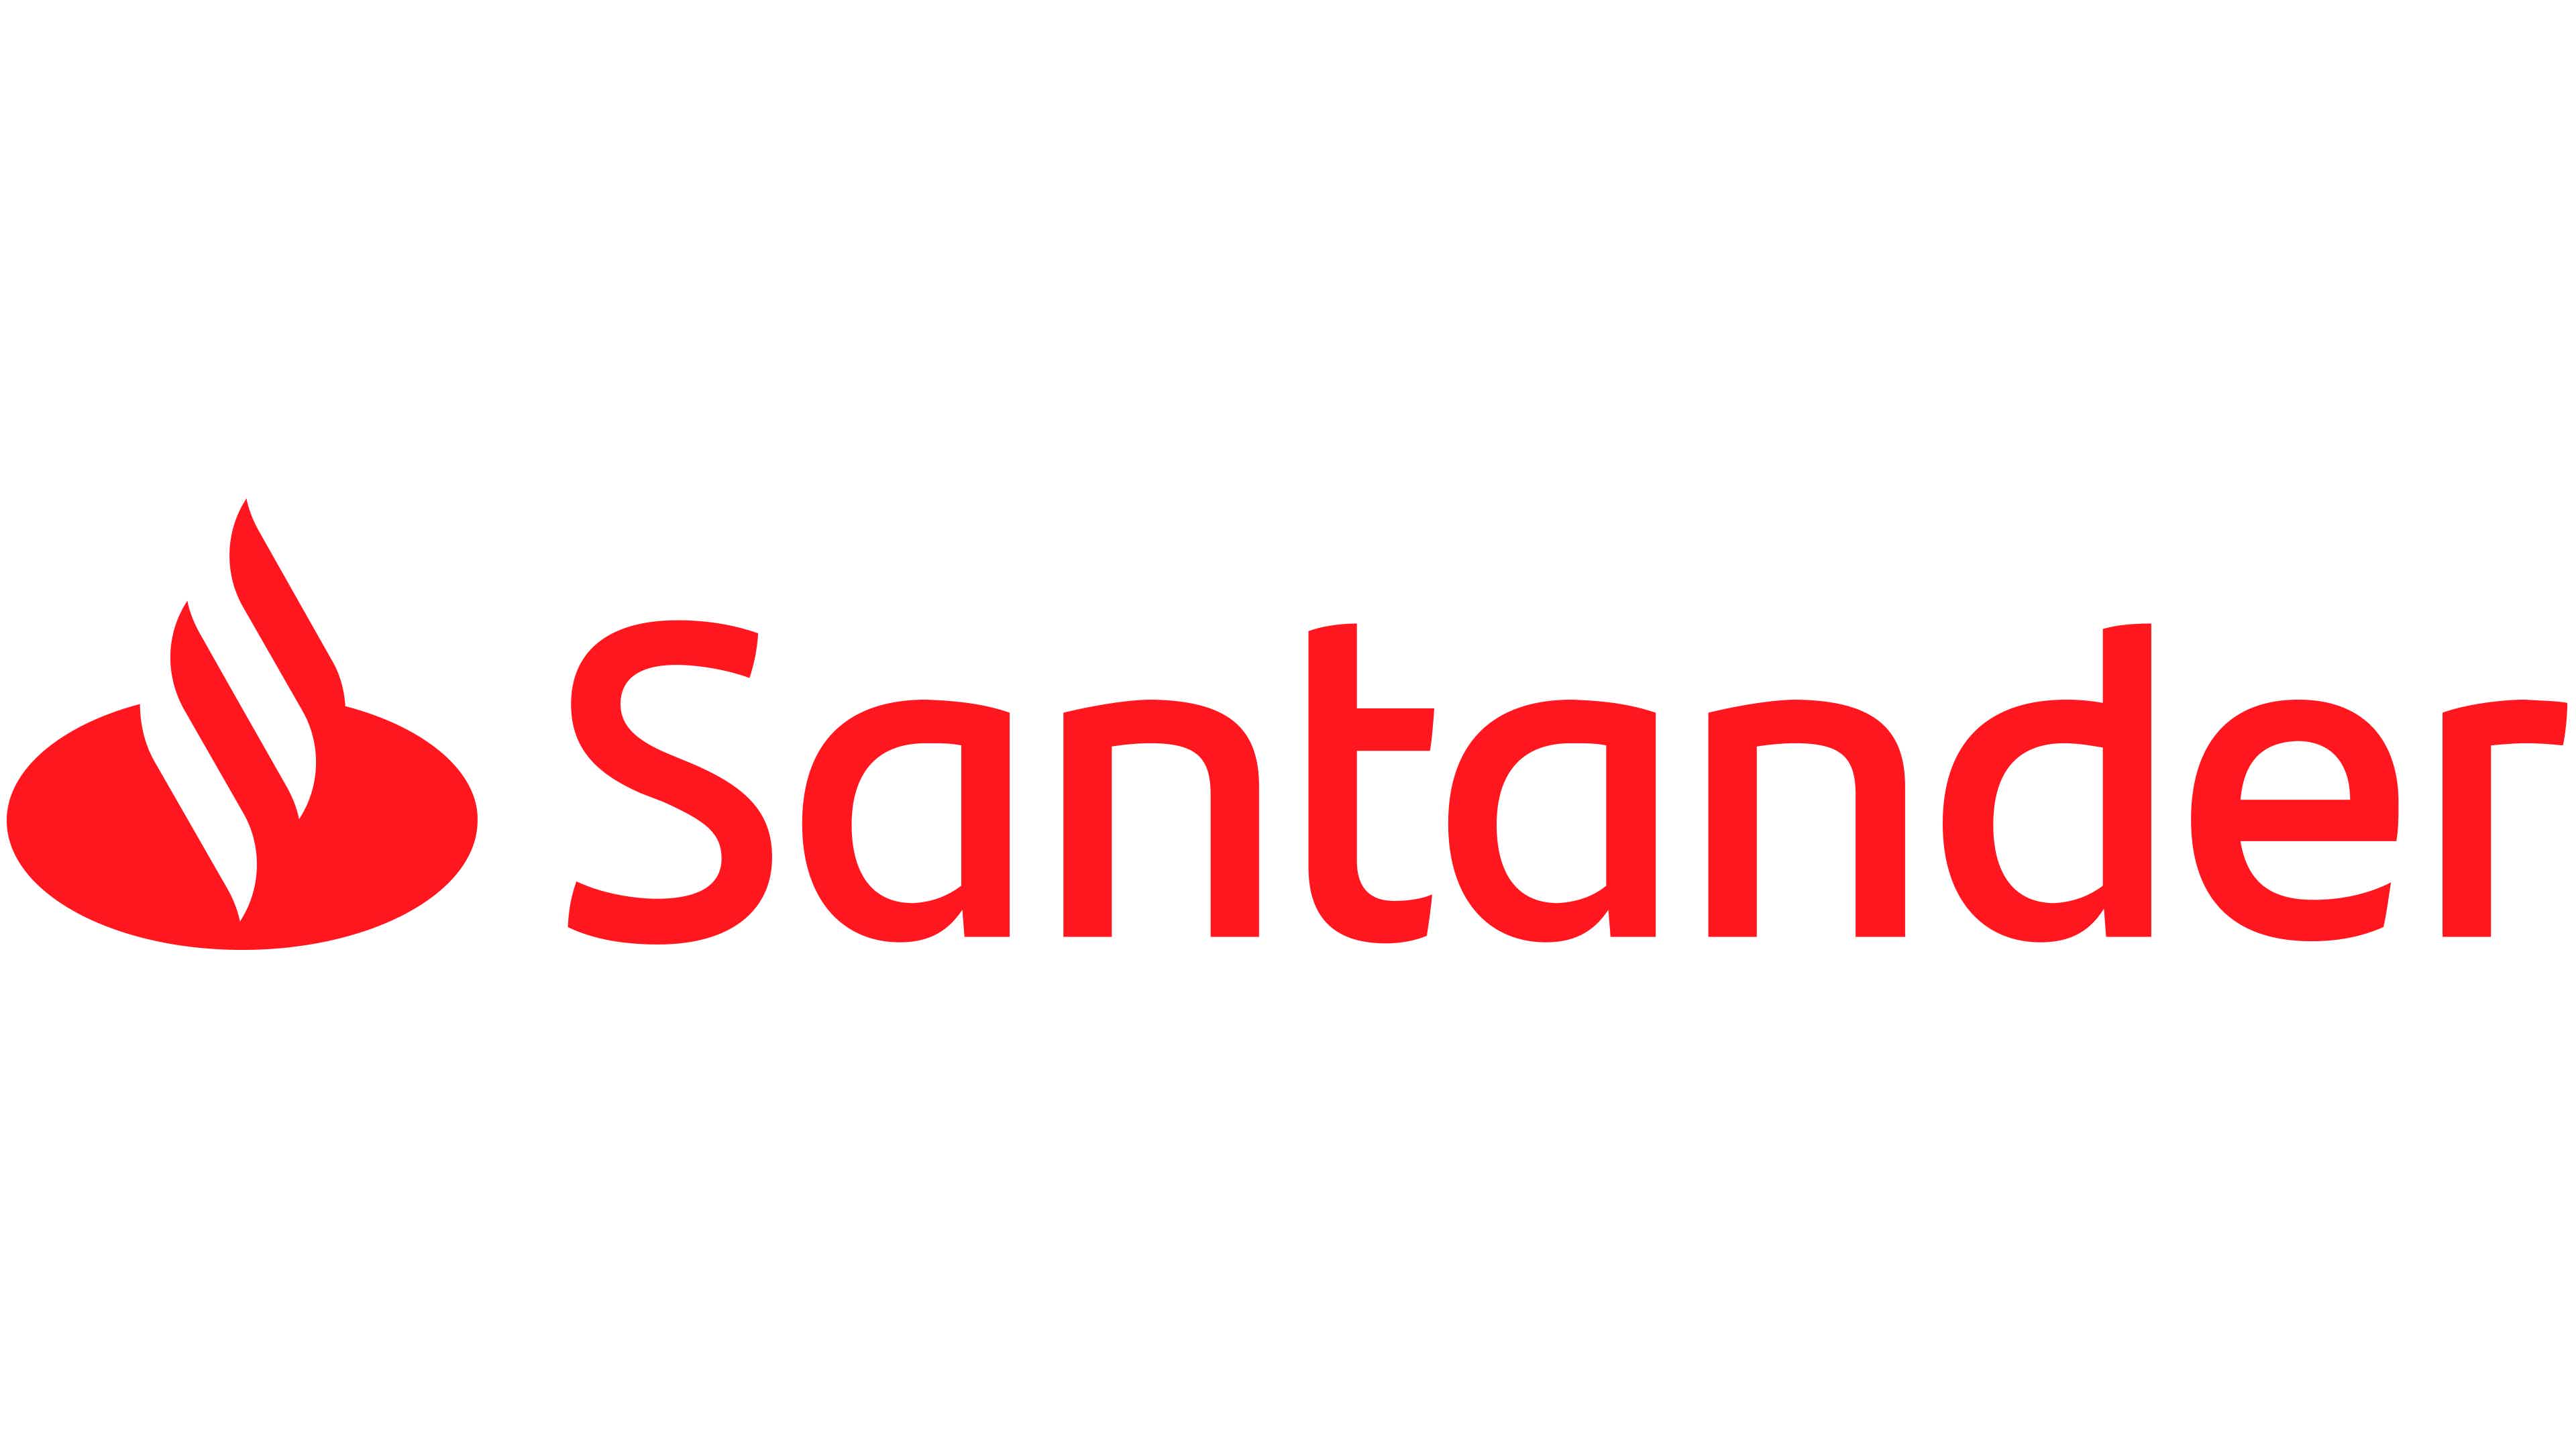 Banco Santander. Fonte: Santander.